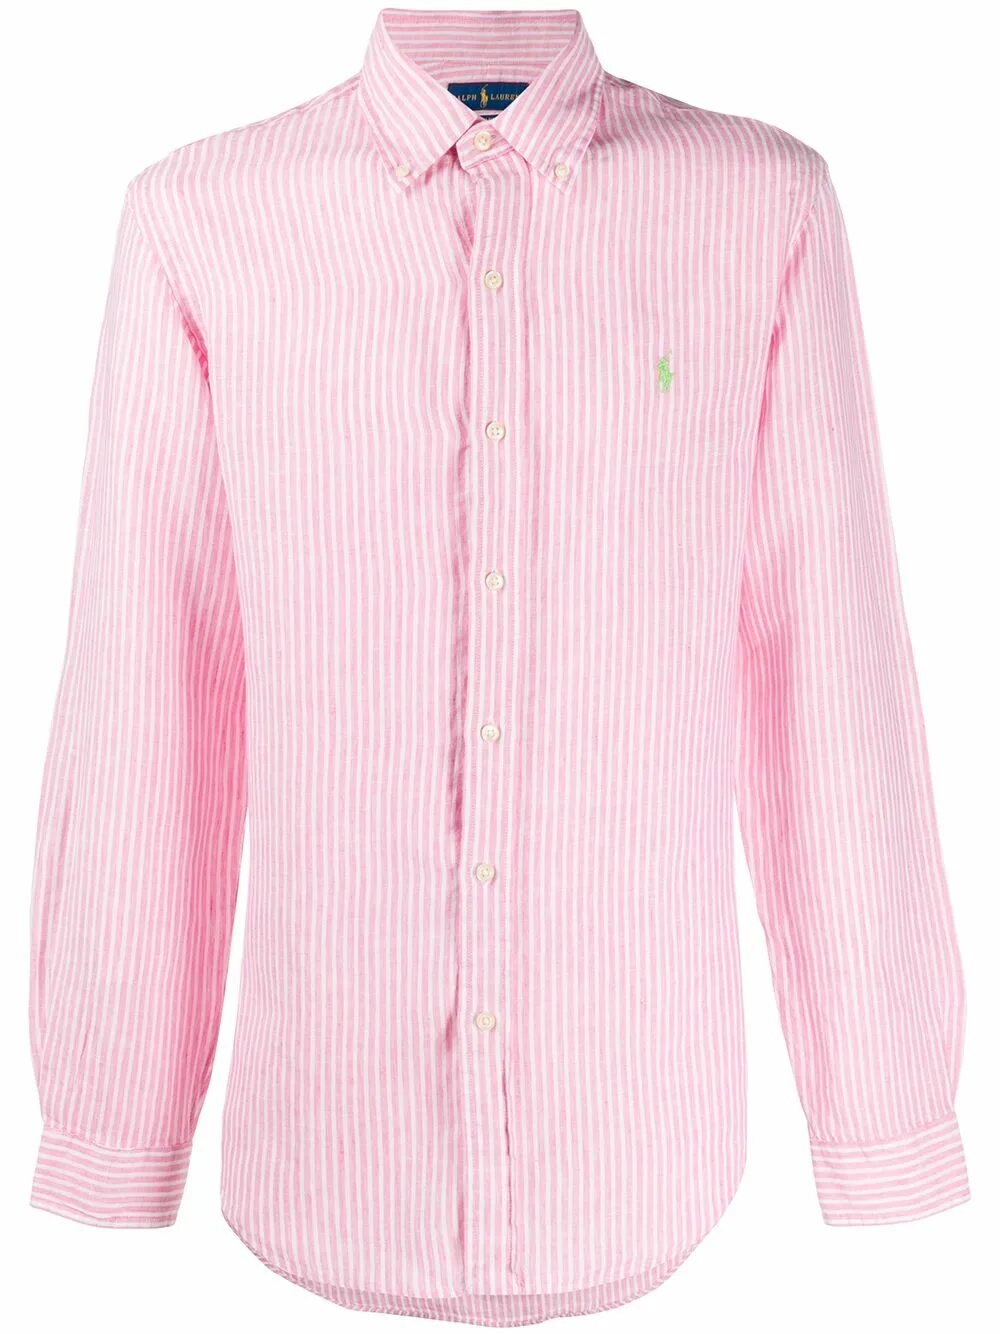 Полосатая рубашка Ральф Лорен. Мужская рубашка розовая Ральф Лорен. Рубашка Ральф Лорен в полоску. Рубашка Polo Ralph Lauren розовая. Розовая рубашка в полоску